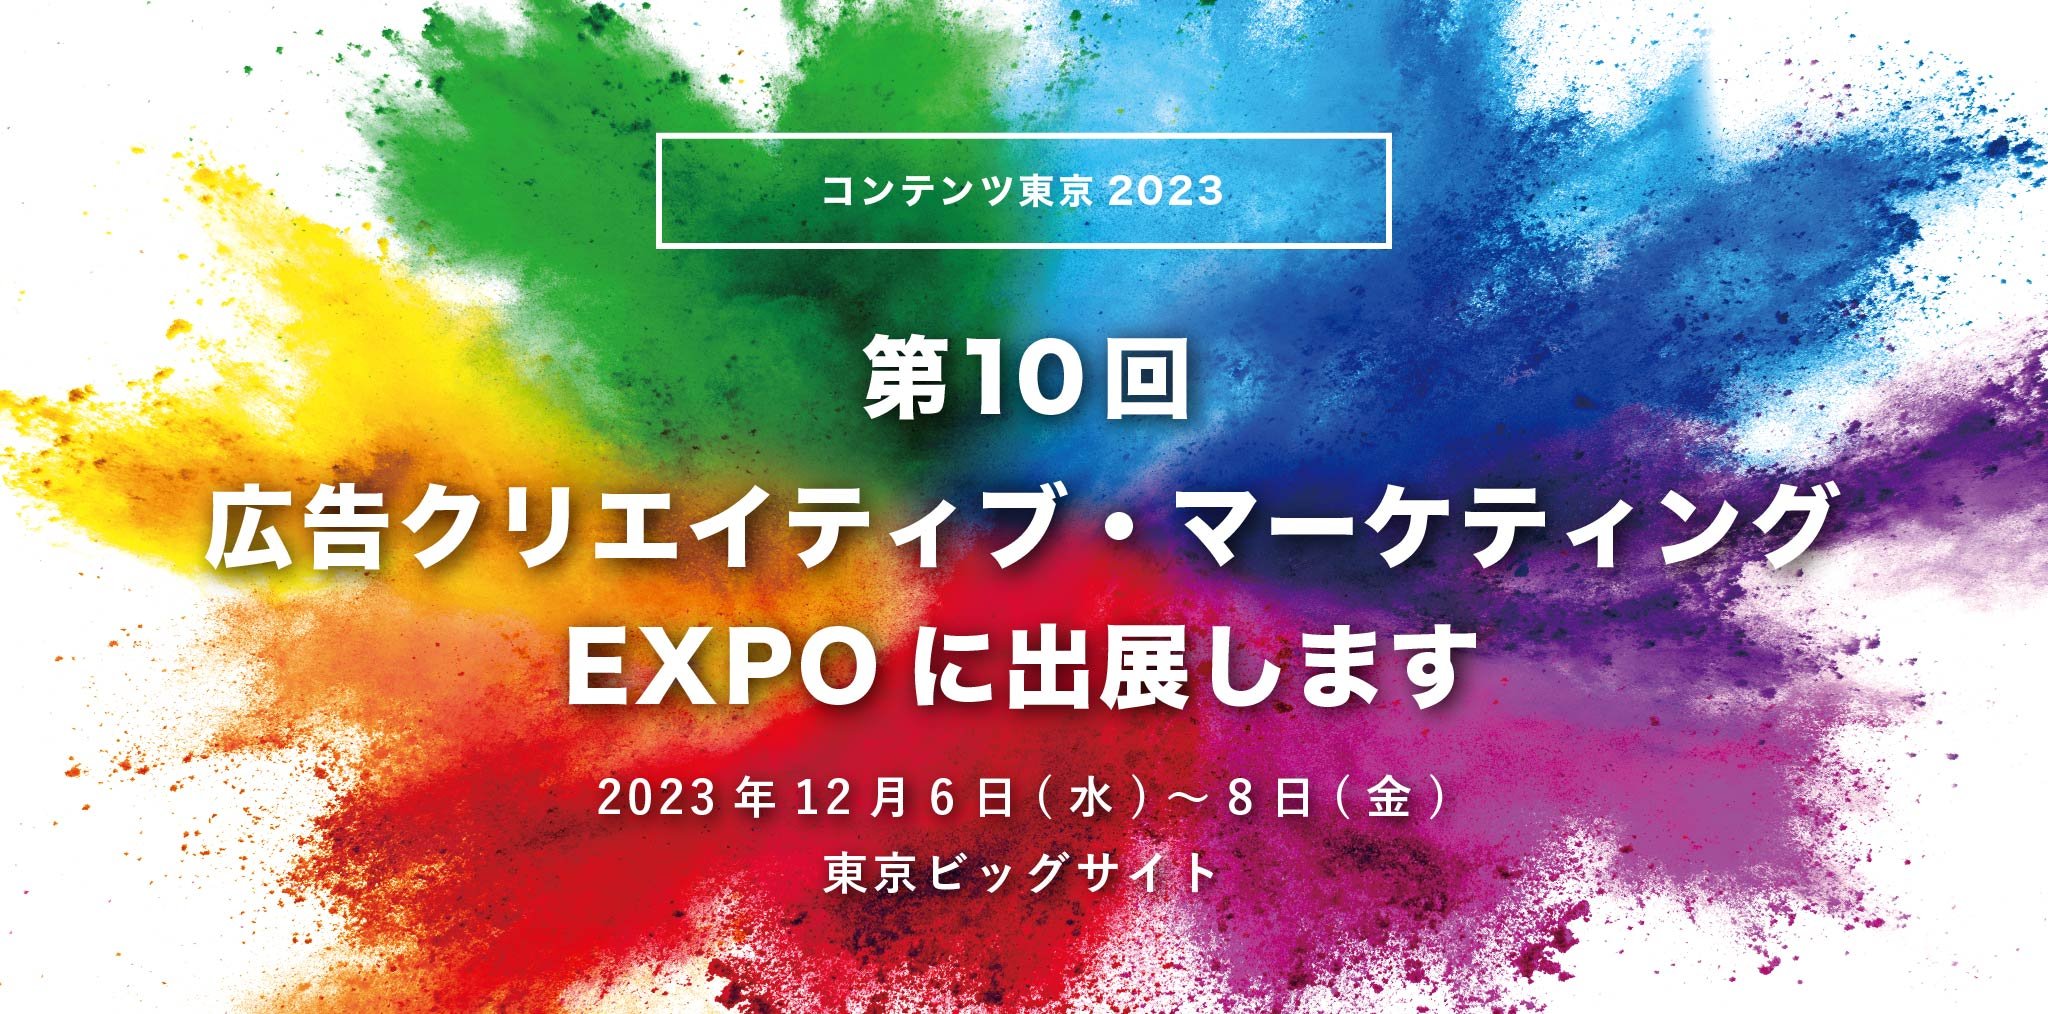 【コンテンツ東京 2023】第10回 広告クリエイティブ・マーケティング EXPOに出展します